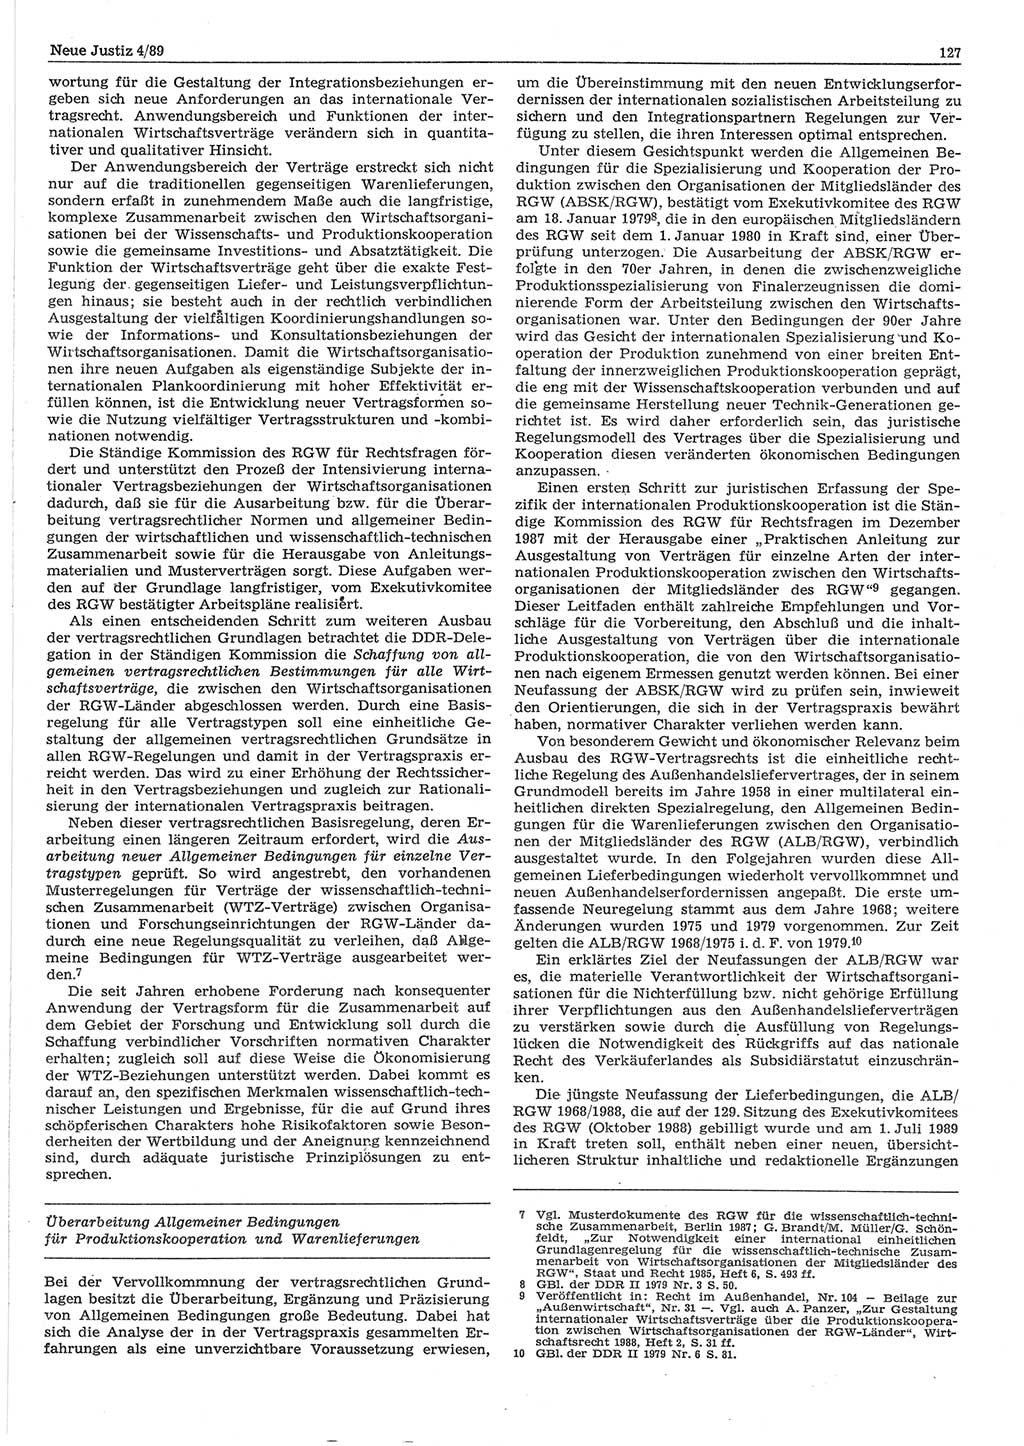 Neue Justiz (NJ), Zeitschrift für sozialistisches Recht und Gesetzlichkeit [Deutsche Demokratische Republik (DDR)], 43. Jahrgang 1989, Seite 127 (NJ DDR 1989, S. 127)